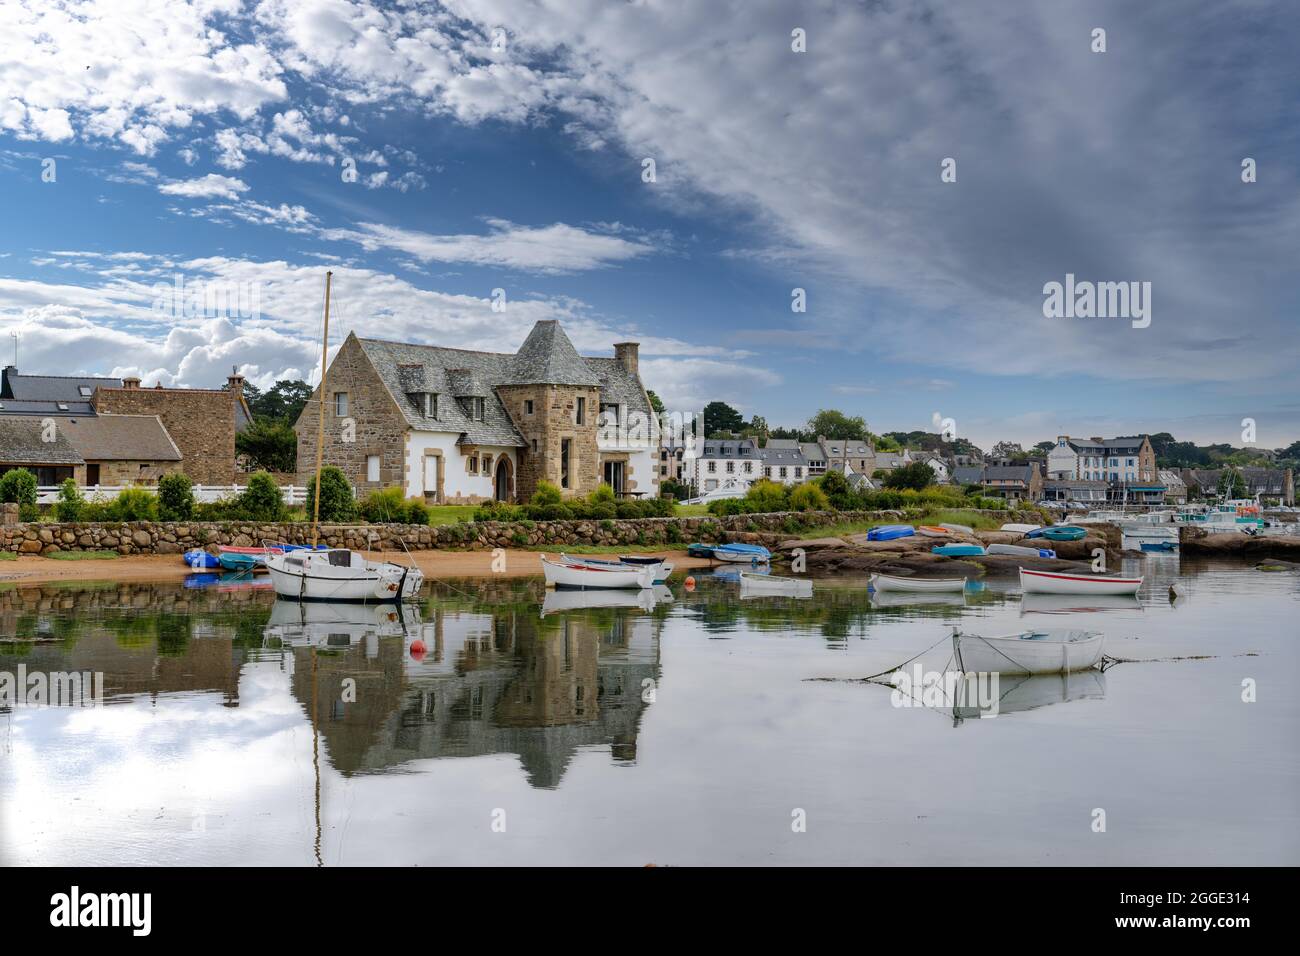 Le port de Tregastel avec bateaux de pêche, maison bretonne typique et ciel bleu, Bretagne, France Banque D'Images